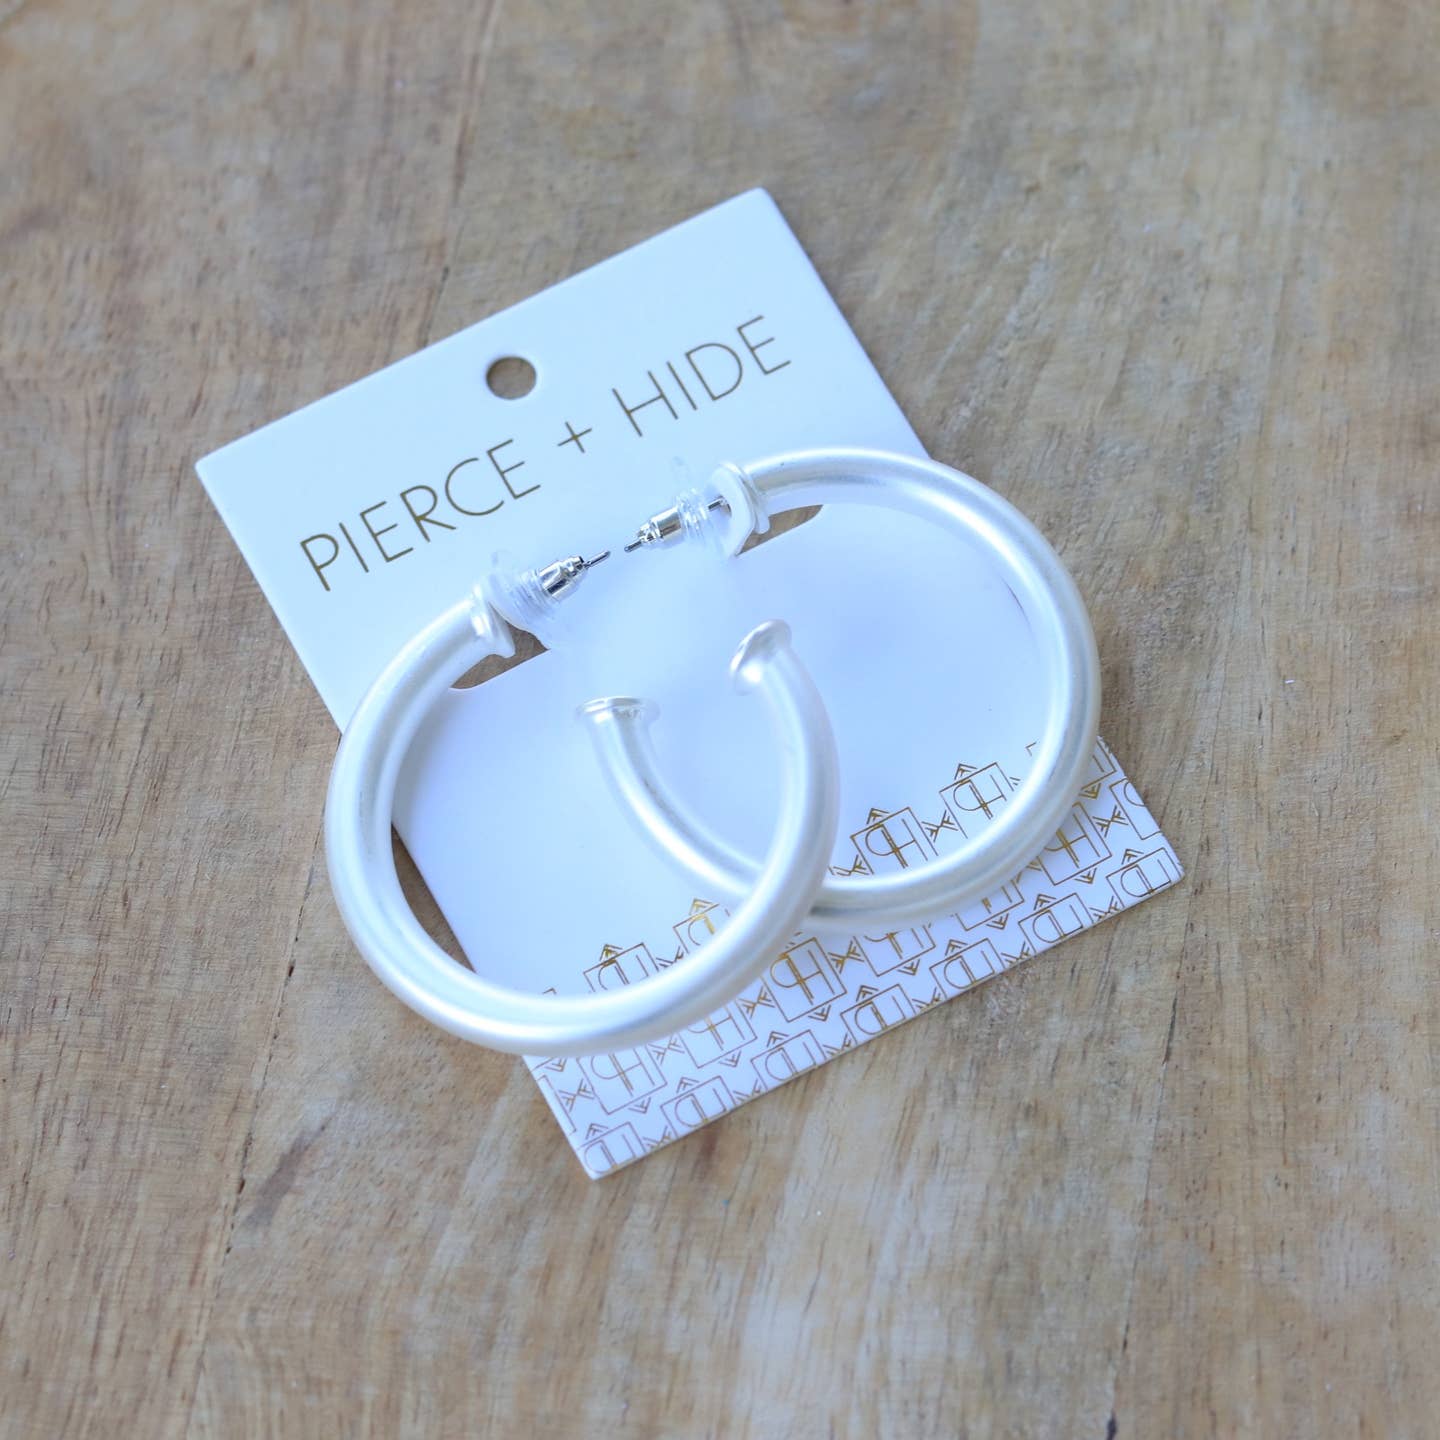 Pierce + Hide: Silver Everyday Hoop Earring